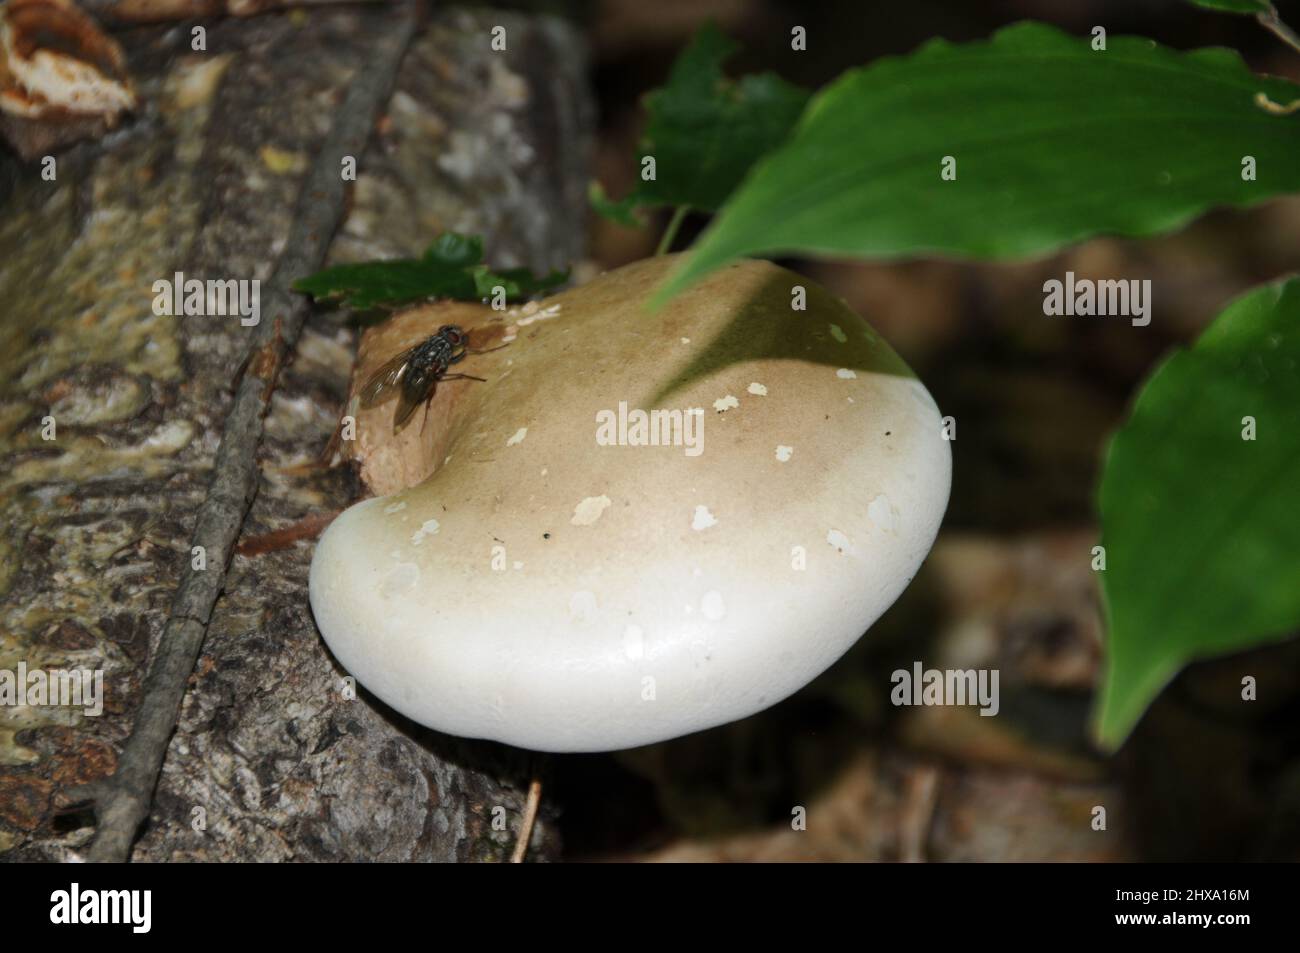 Pilz auf dem Boden mit einem Insekt fliegen auf dem Pilz, erstaunliche Phänomene in der Umwelt und Lebensraum. Pilz. Stockfoto